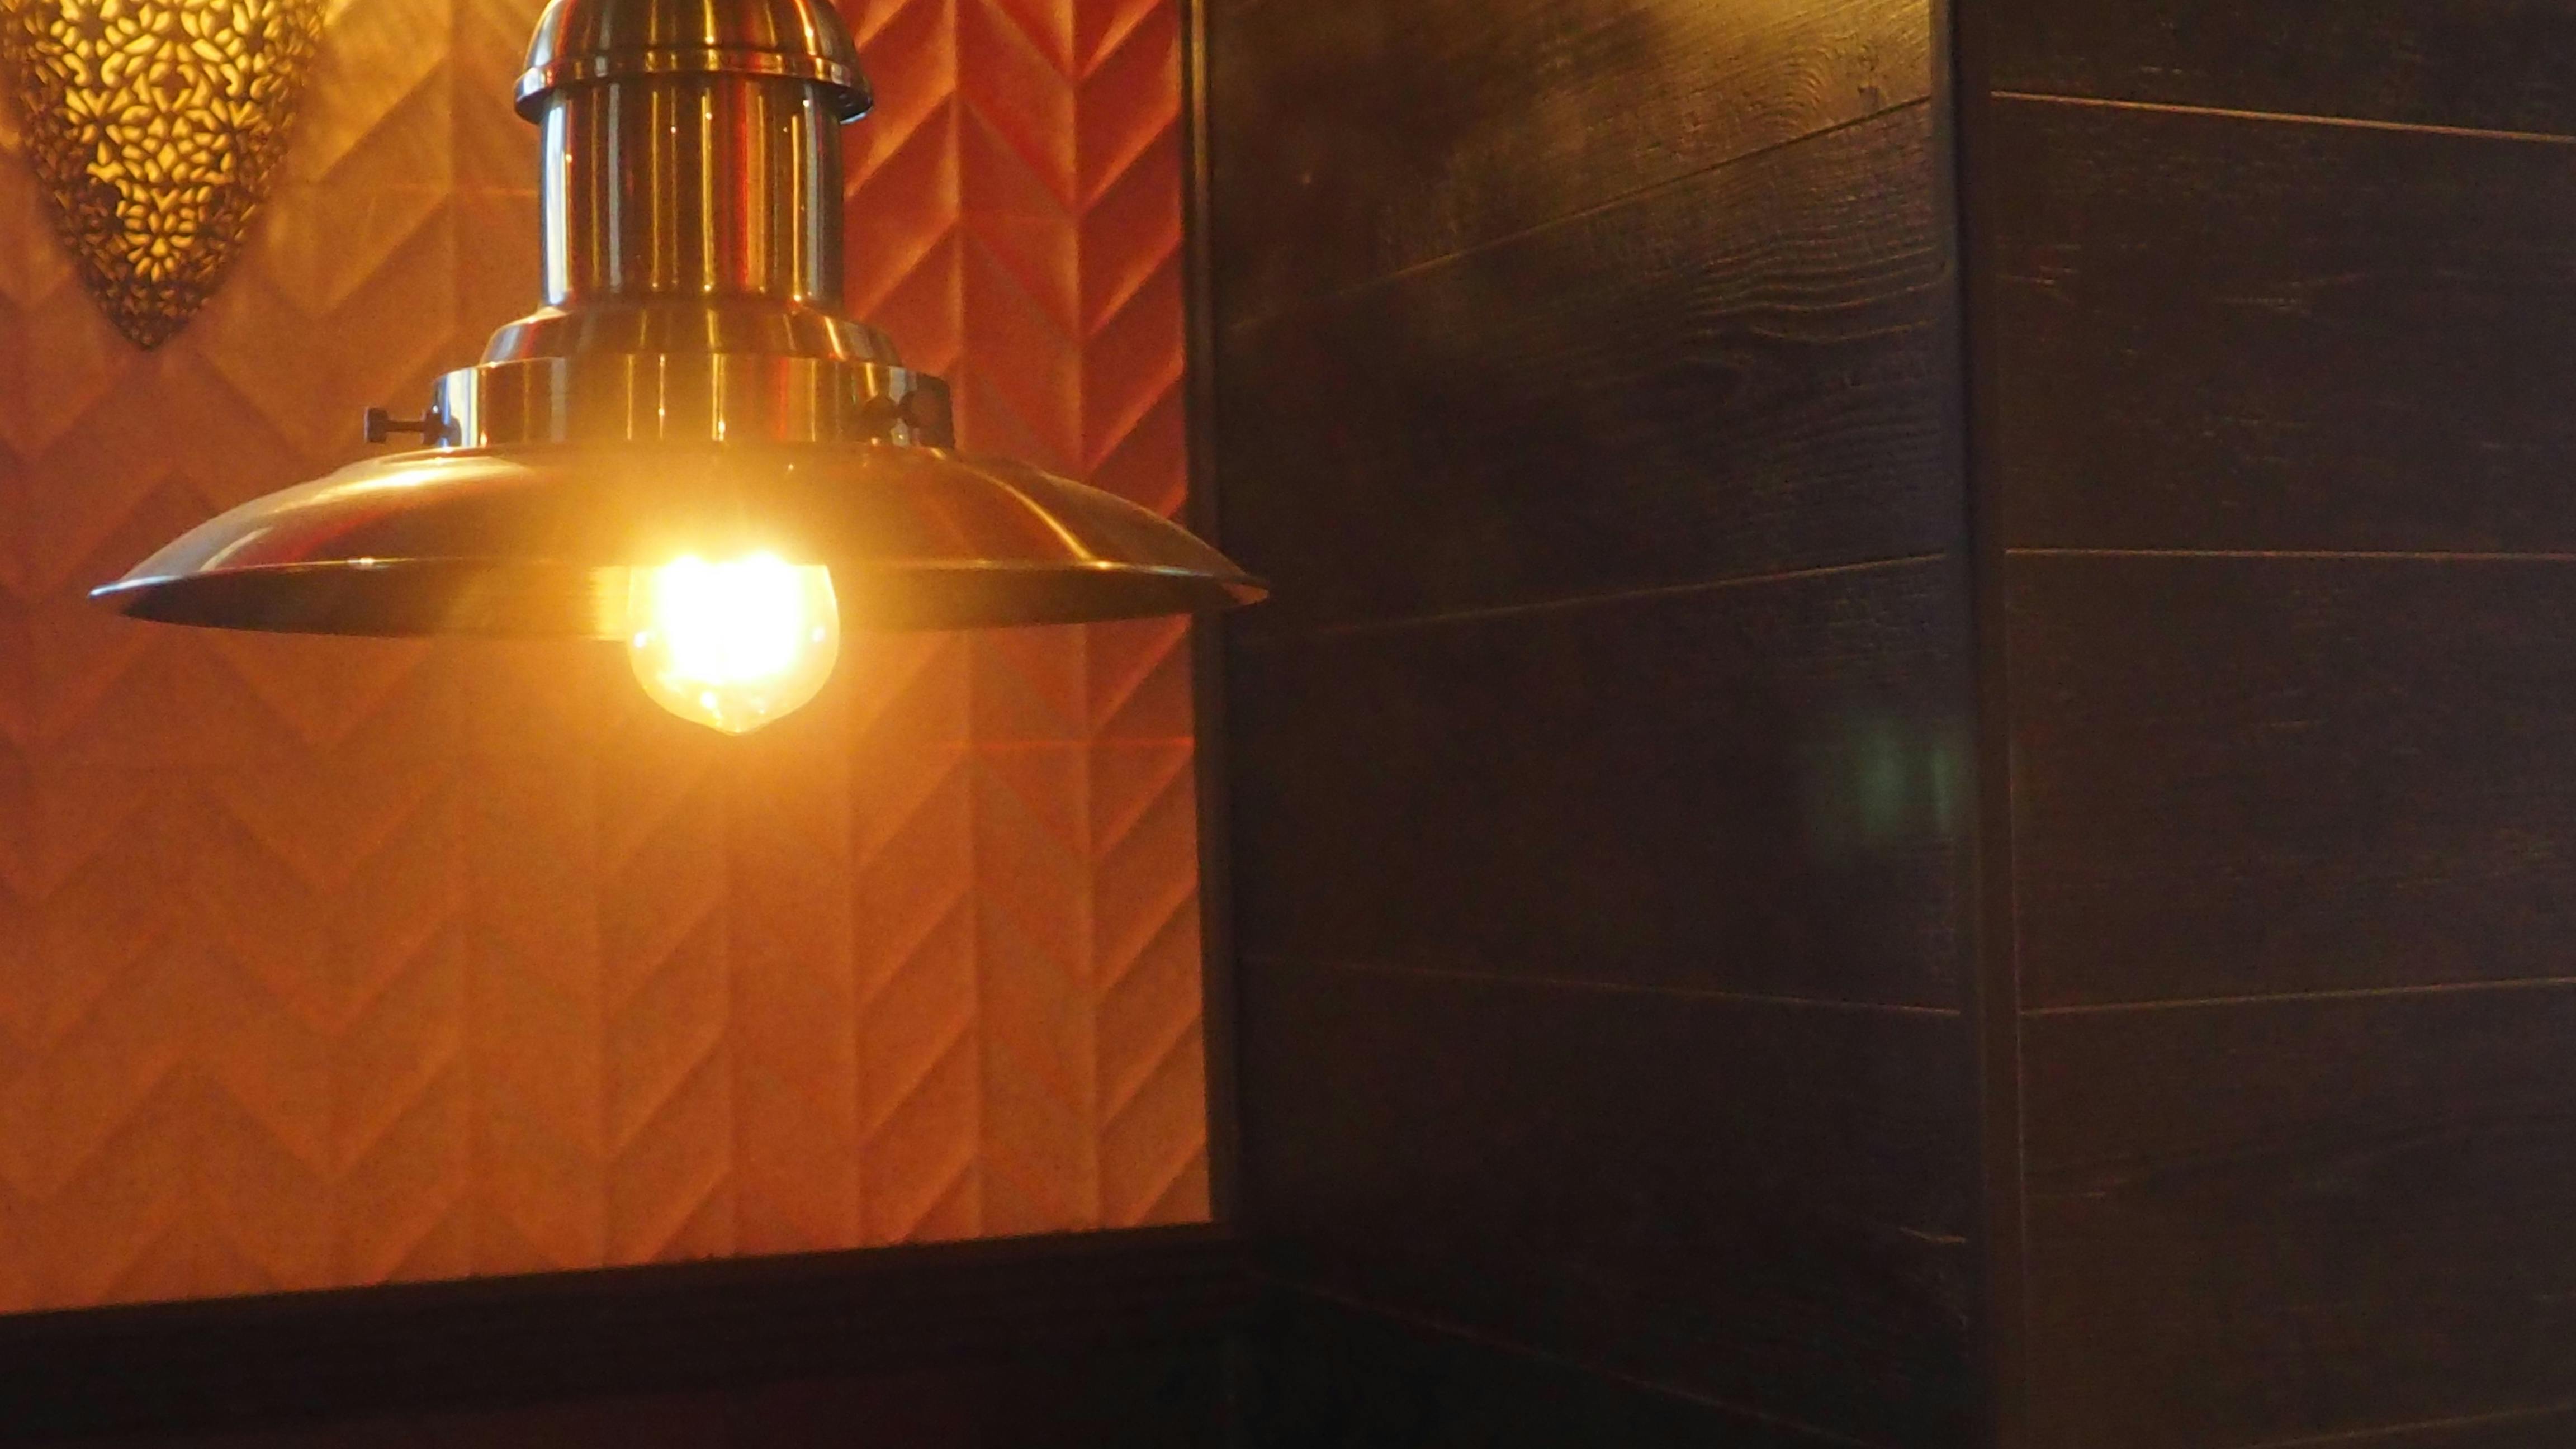 Free stock photo of light, restaurant lighting